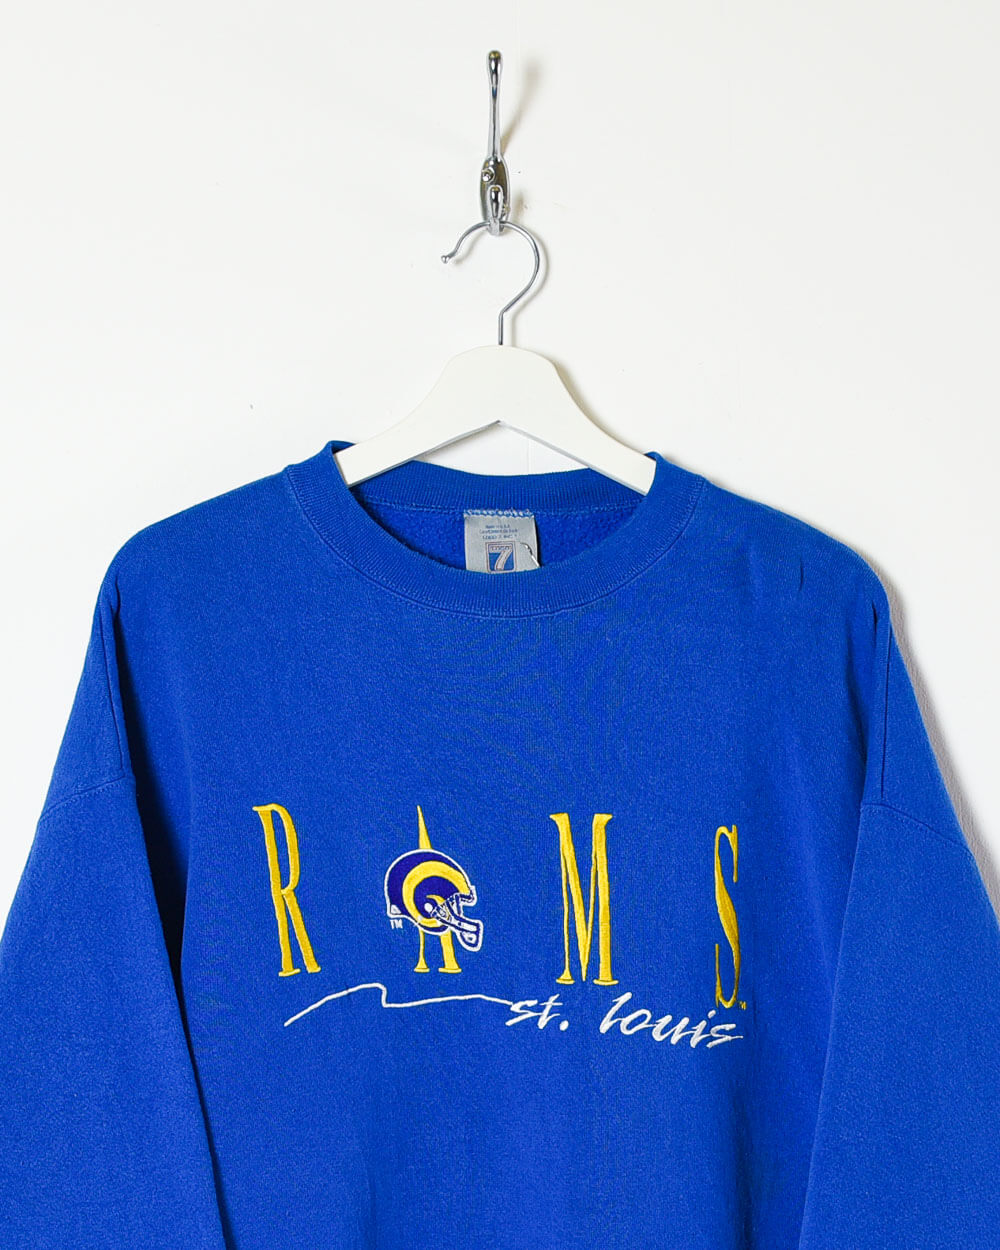 Blue Logo 7 Rams St. Louis Sweatshirt - X-Large